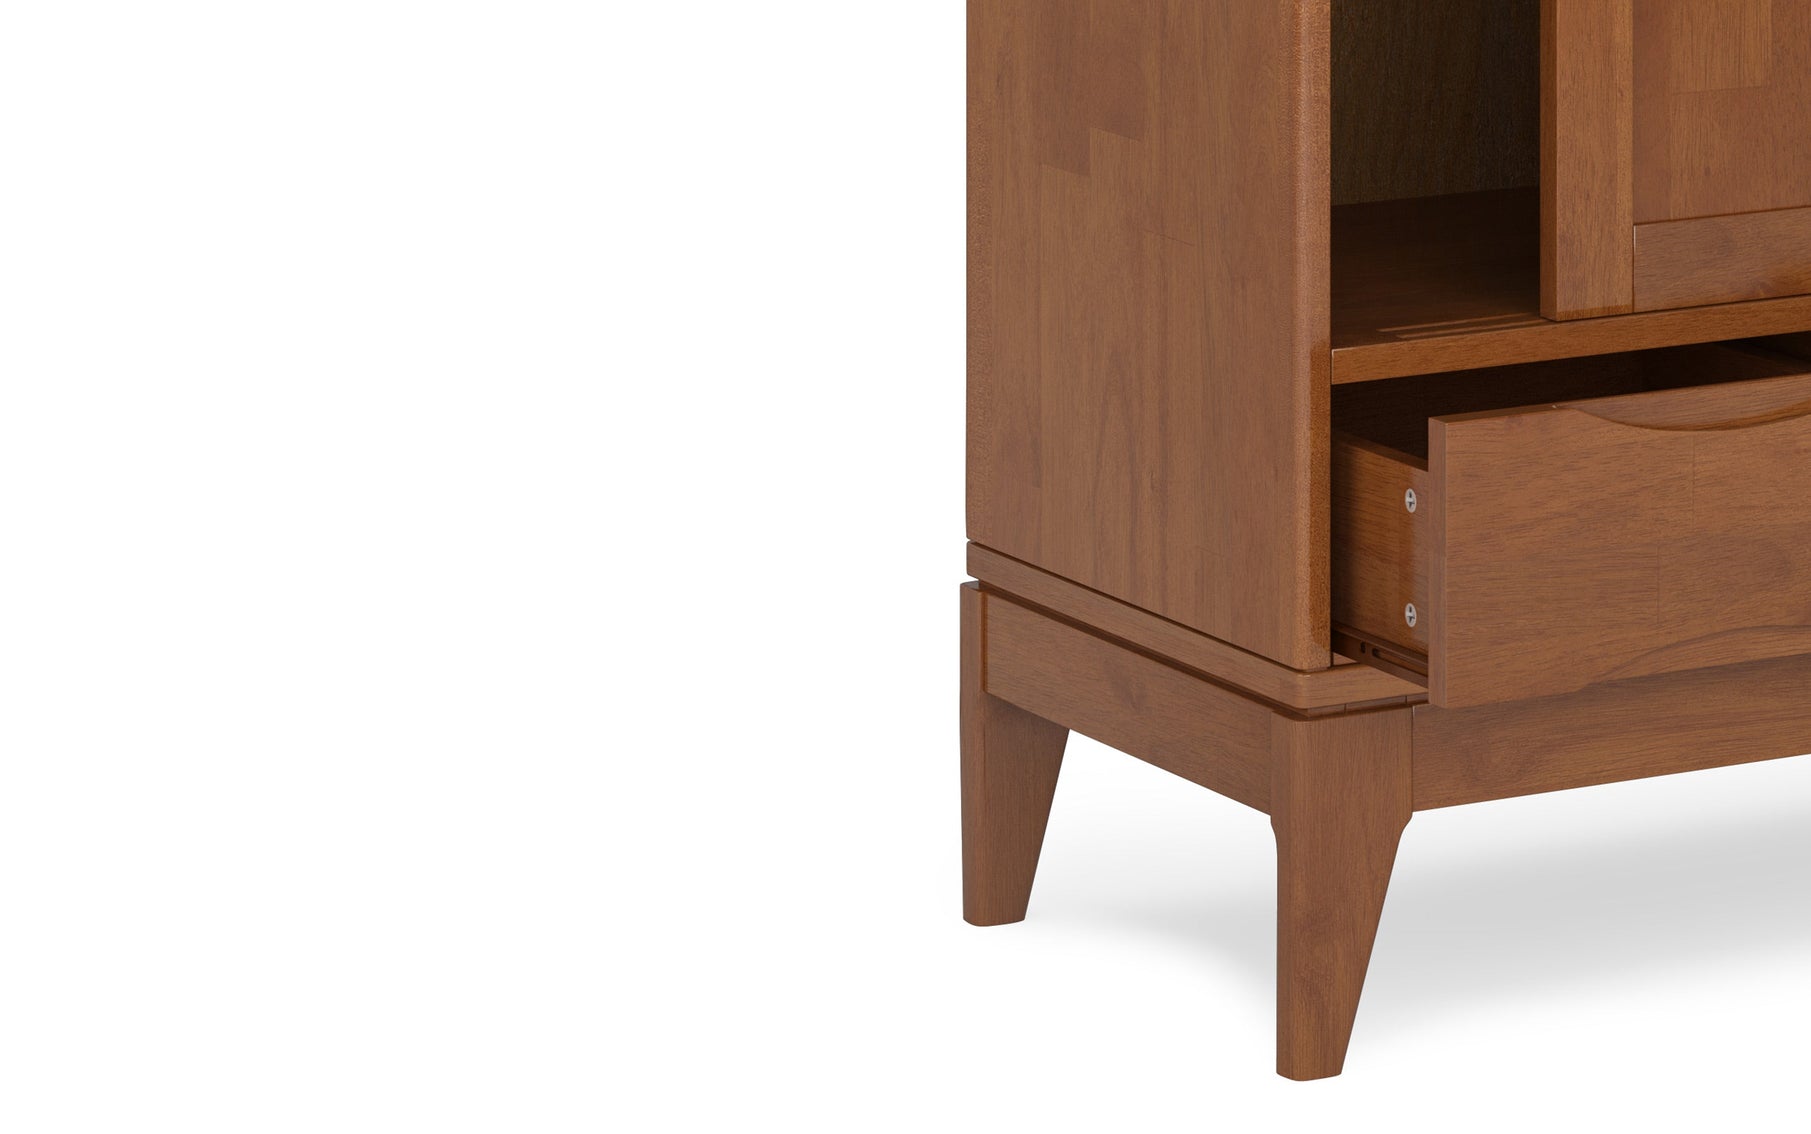 Teak Brown | Harper 48 inch Medium Storage Cabinet